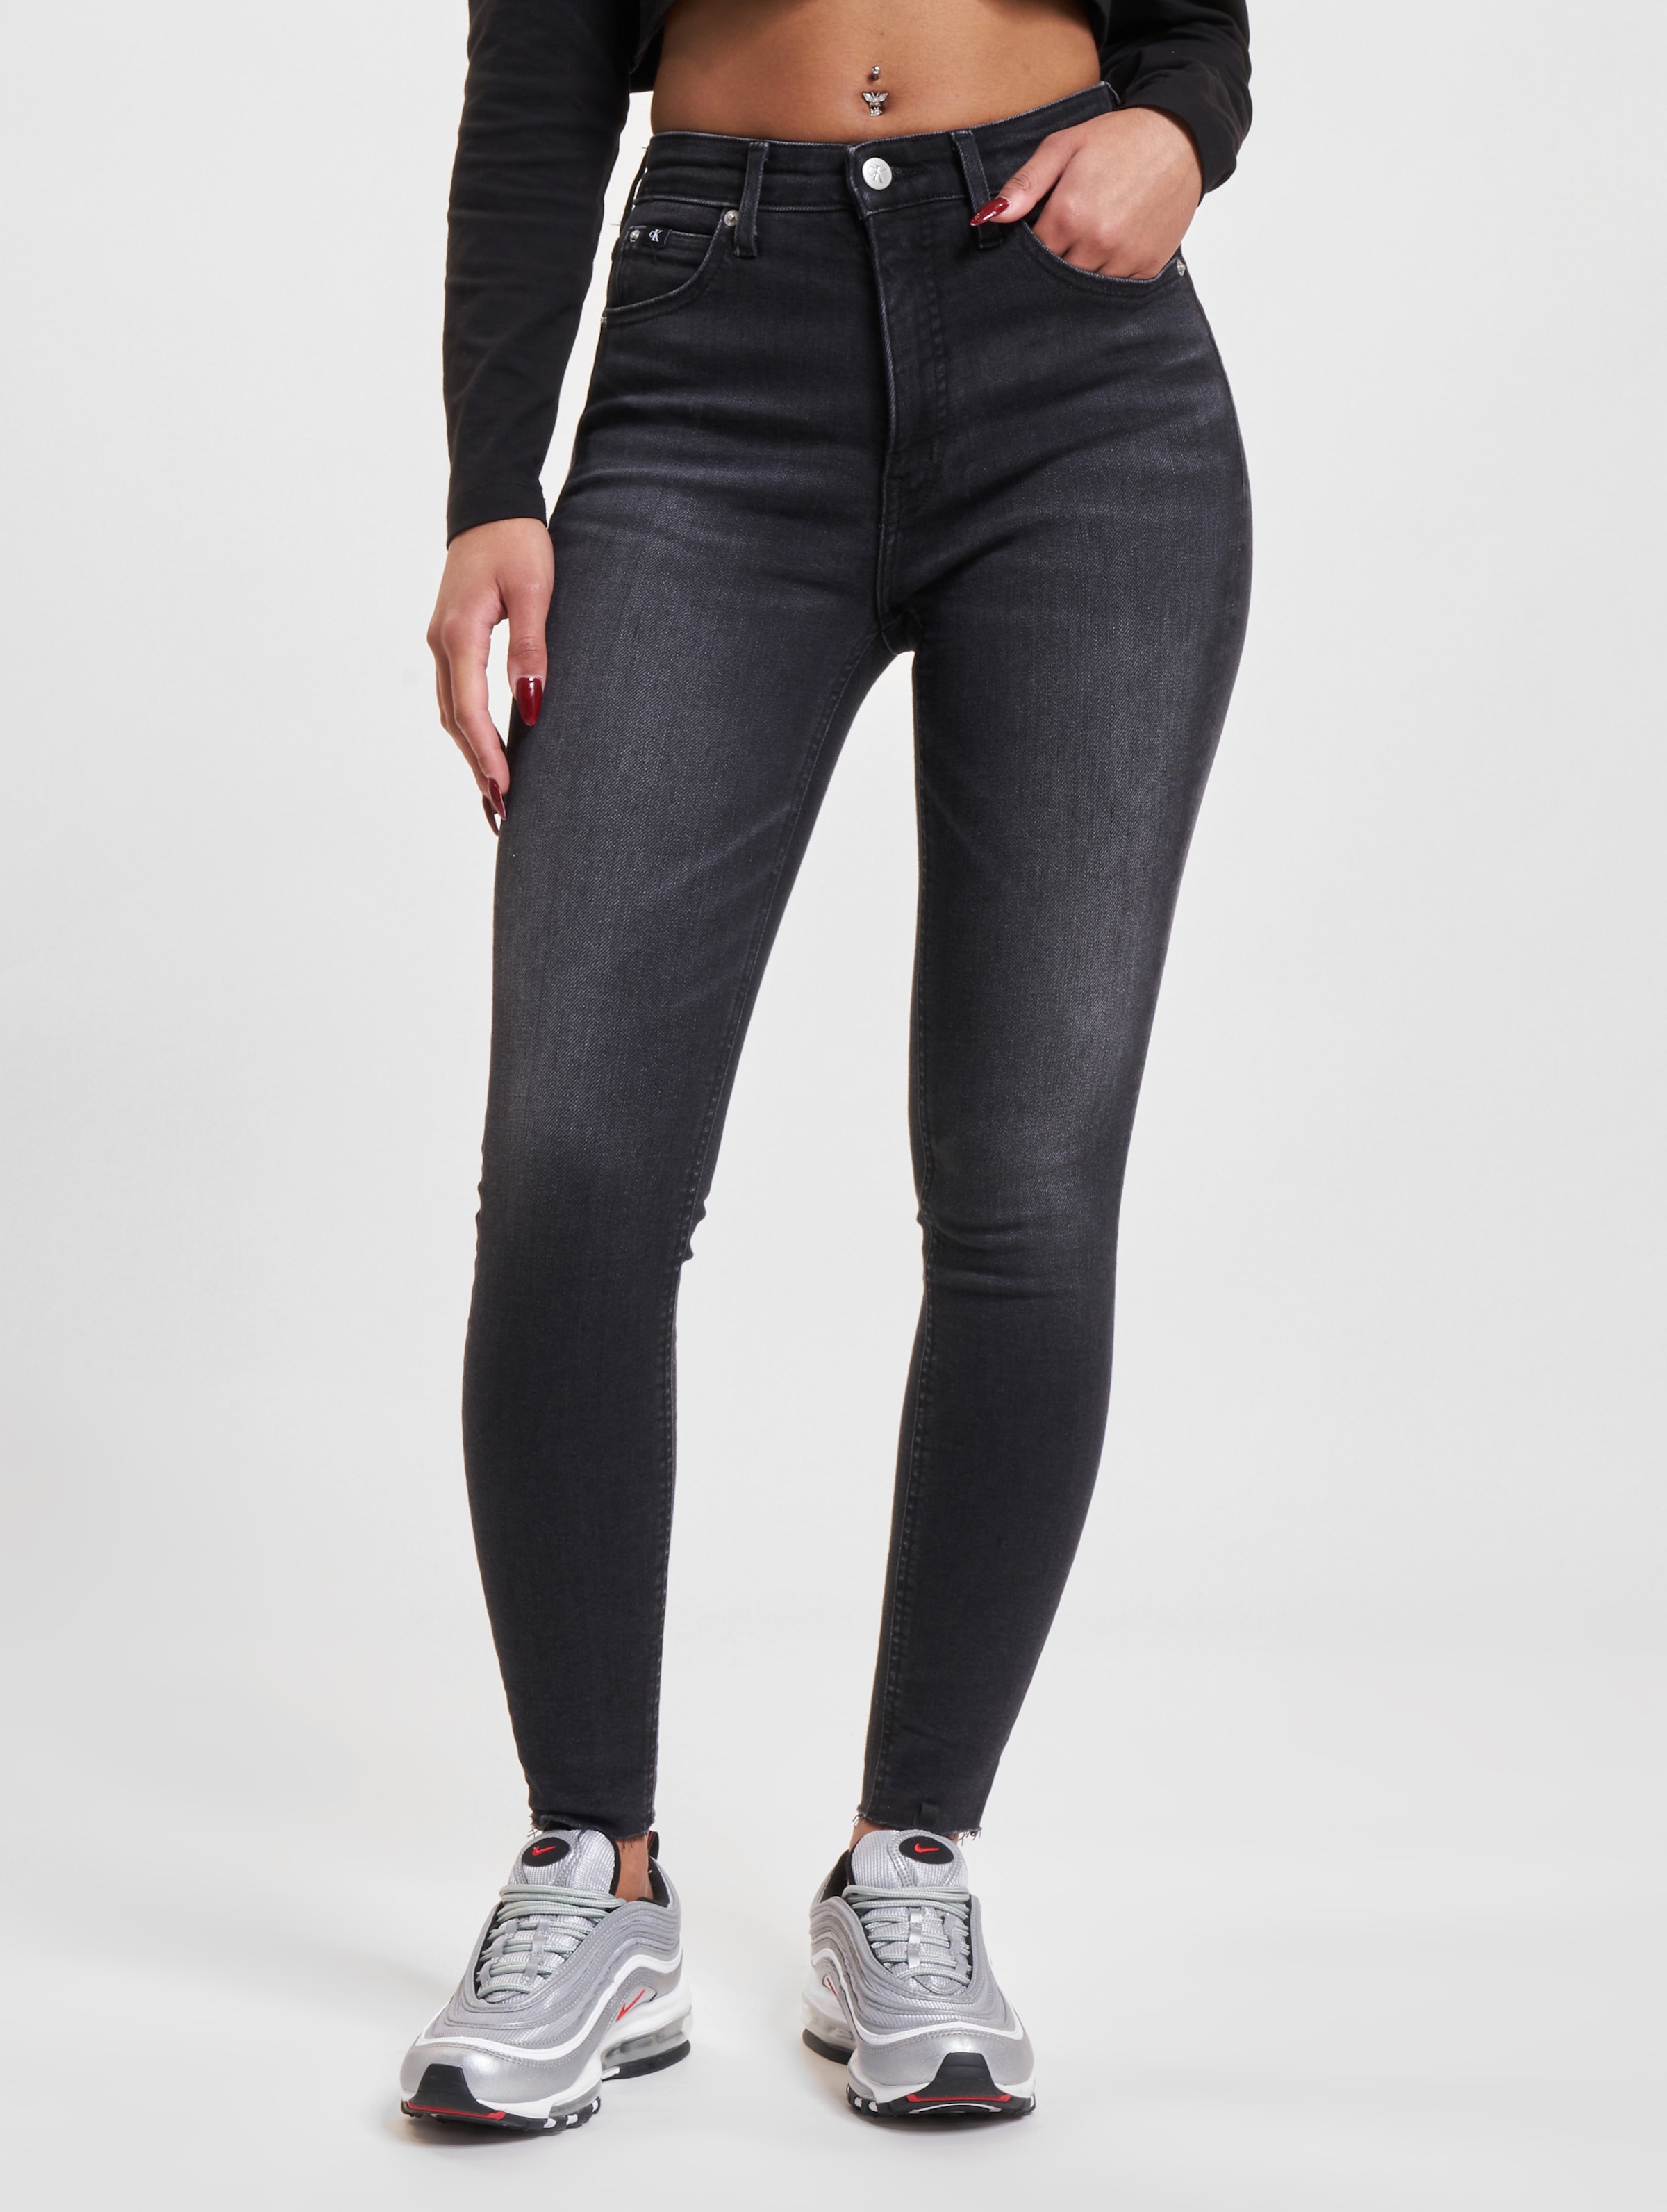 Buyr.com | Leggings | Calvin Klein Jeans Women's HIGH Waist Legging, Black,  Large